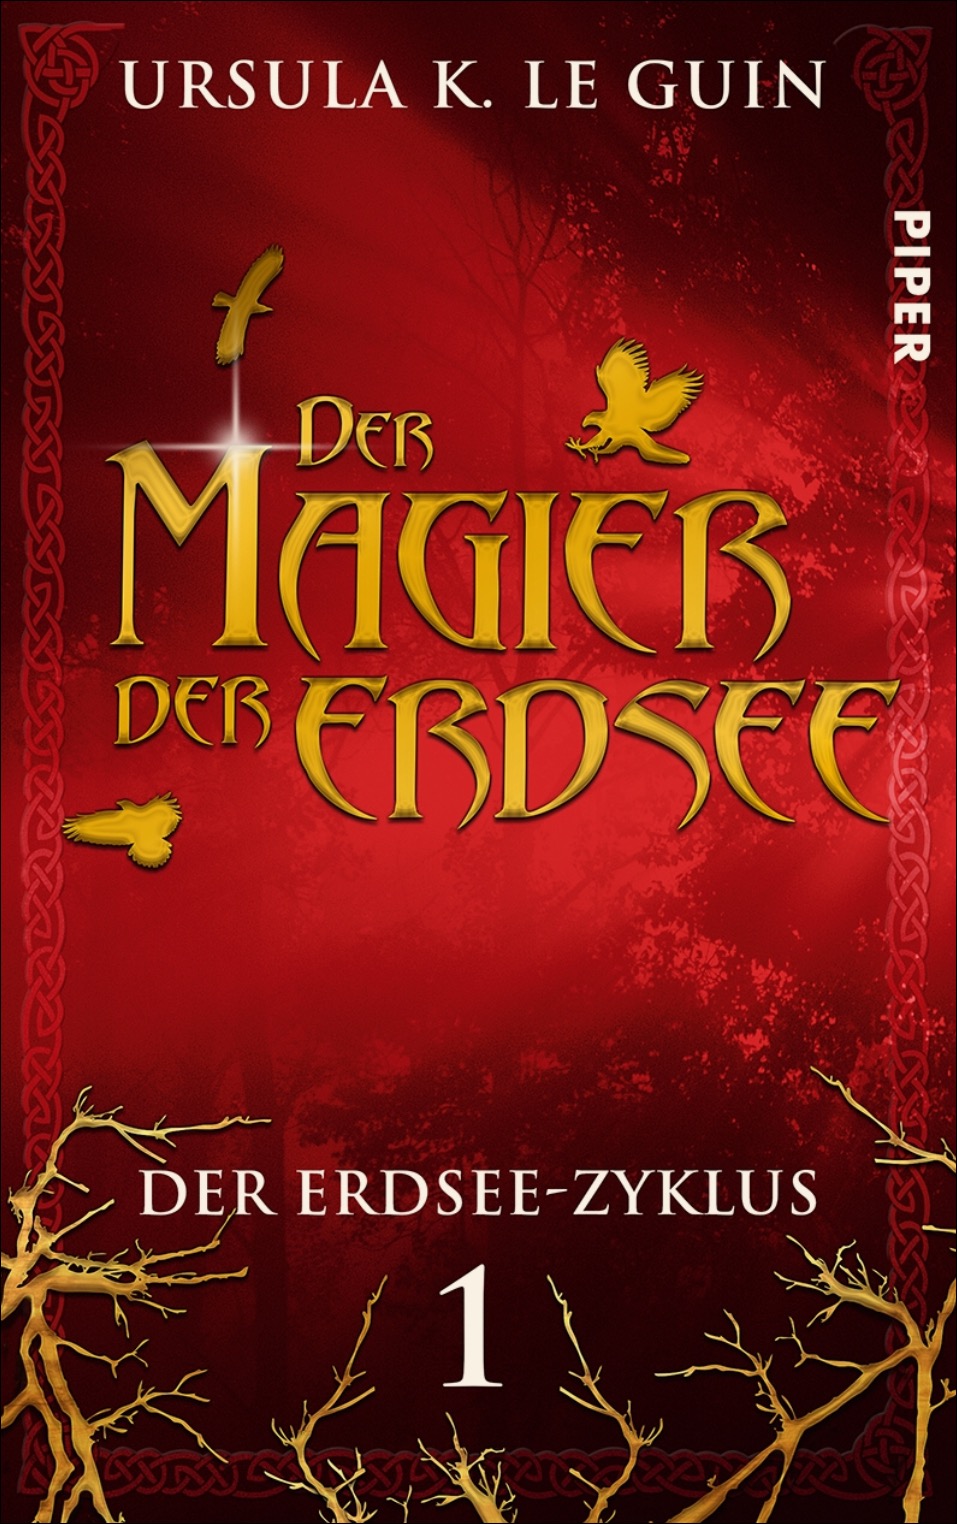 Ursula K. Le Guin: Der Magier der Erdsee, erschienen im Piper-Verlag